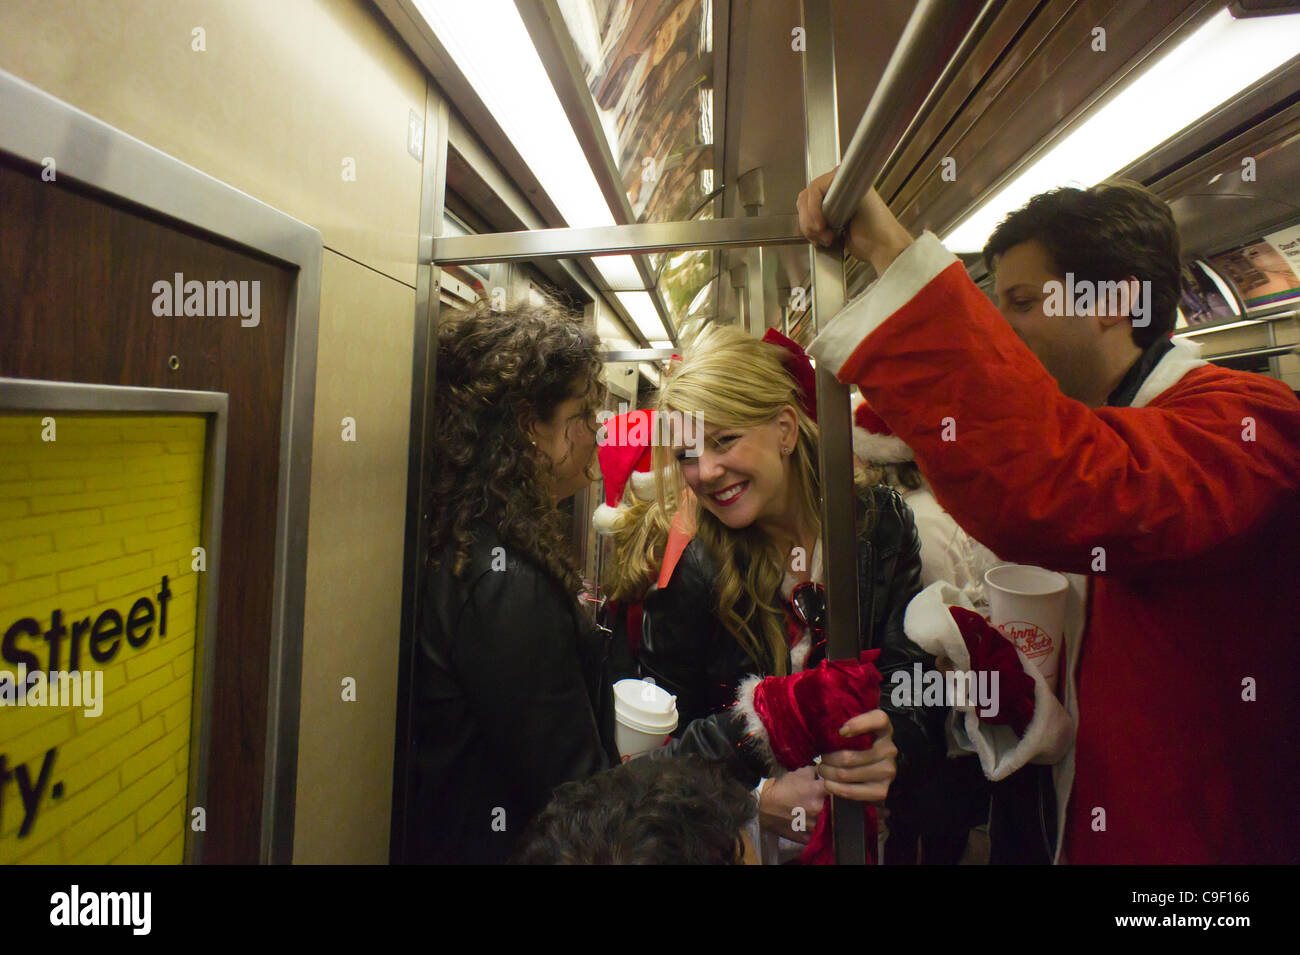 Il Natale di festeggianti partecipa all'annuale corsa Santacon sulla metropolitana di New York il sabato, 10 dicembre 2011. Santacon, principalmente un pub crawl a Santa e altro Natale costumi correlati, attira centinaia di masqueraders andando da bar a bar. I bevitori sono stati incoraggiati ad imbibire a e Foto Stock